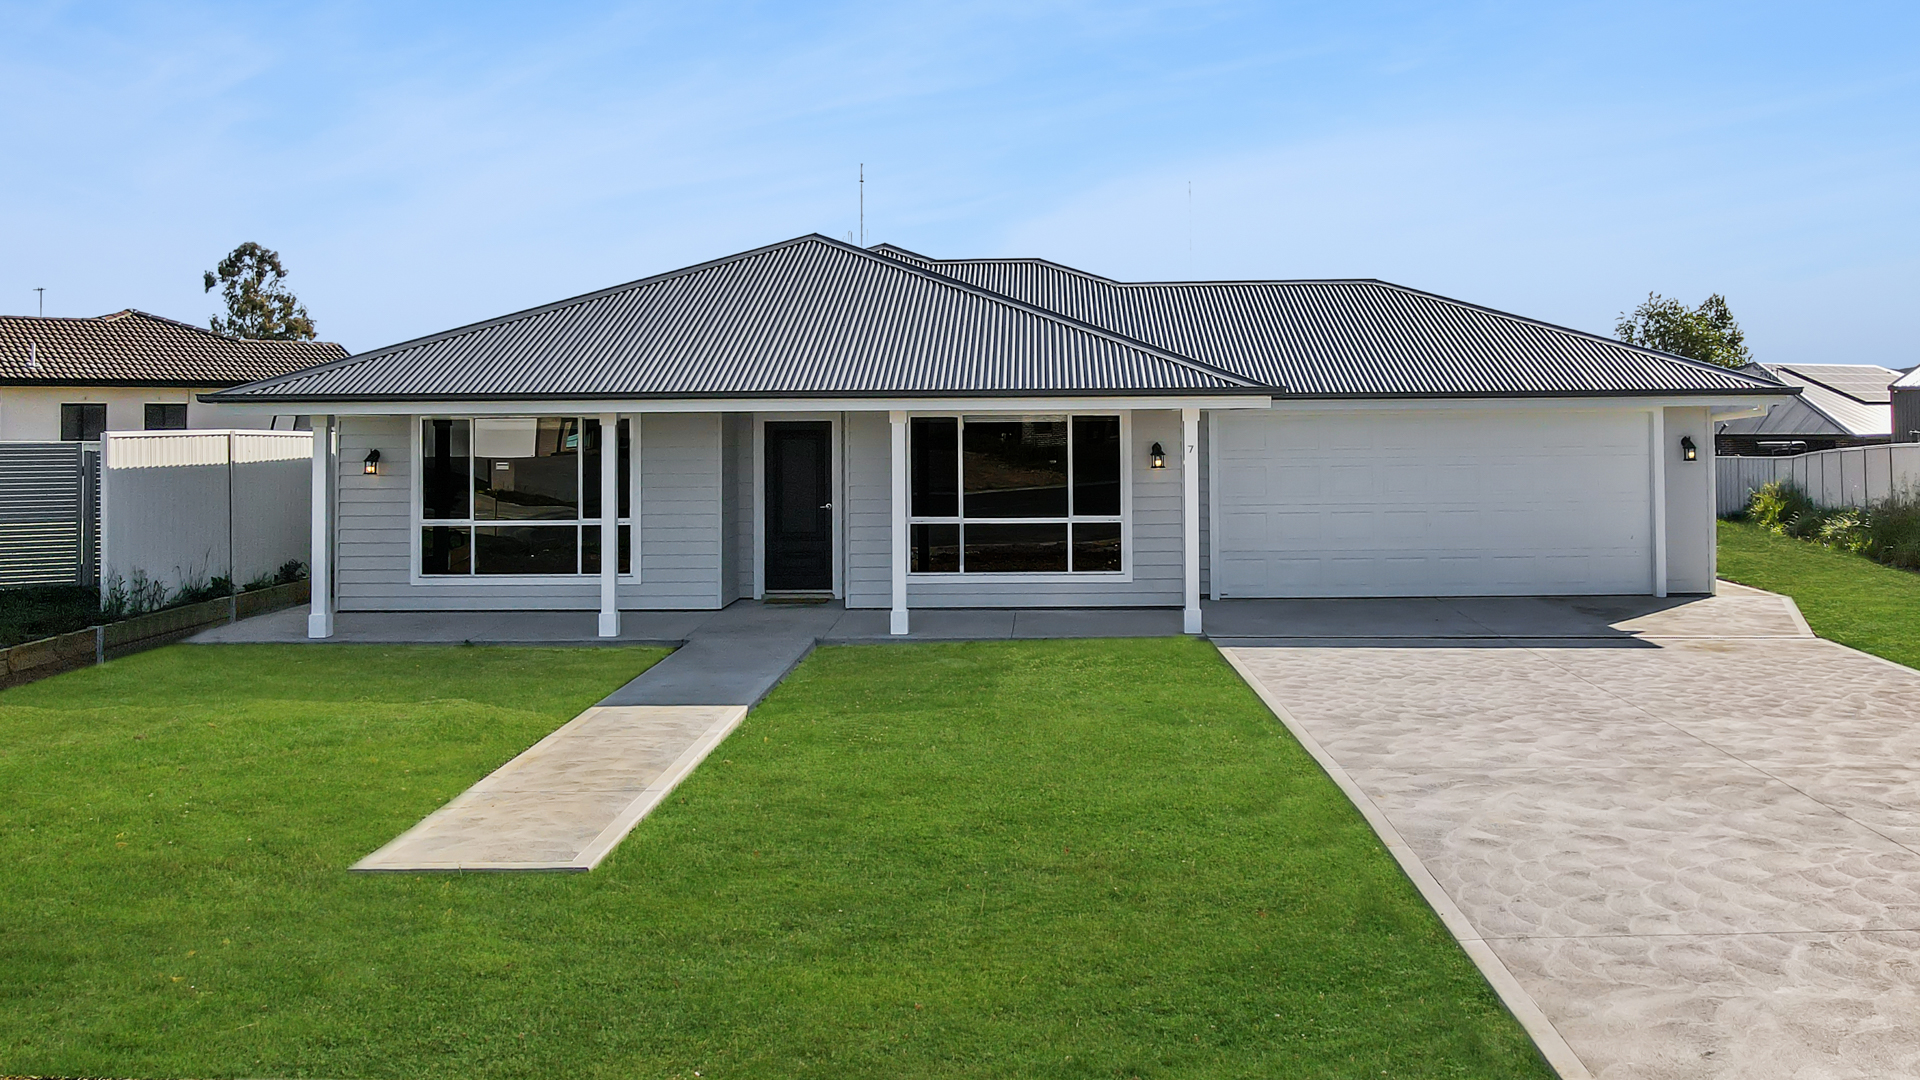 Custom Home Plans, benefits - Daniel Finn Builder